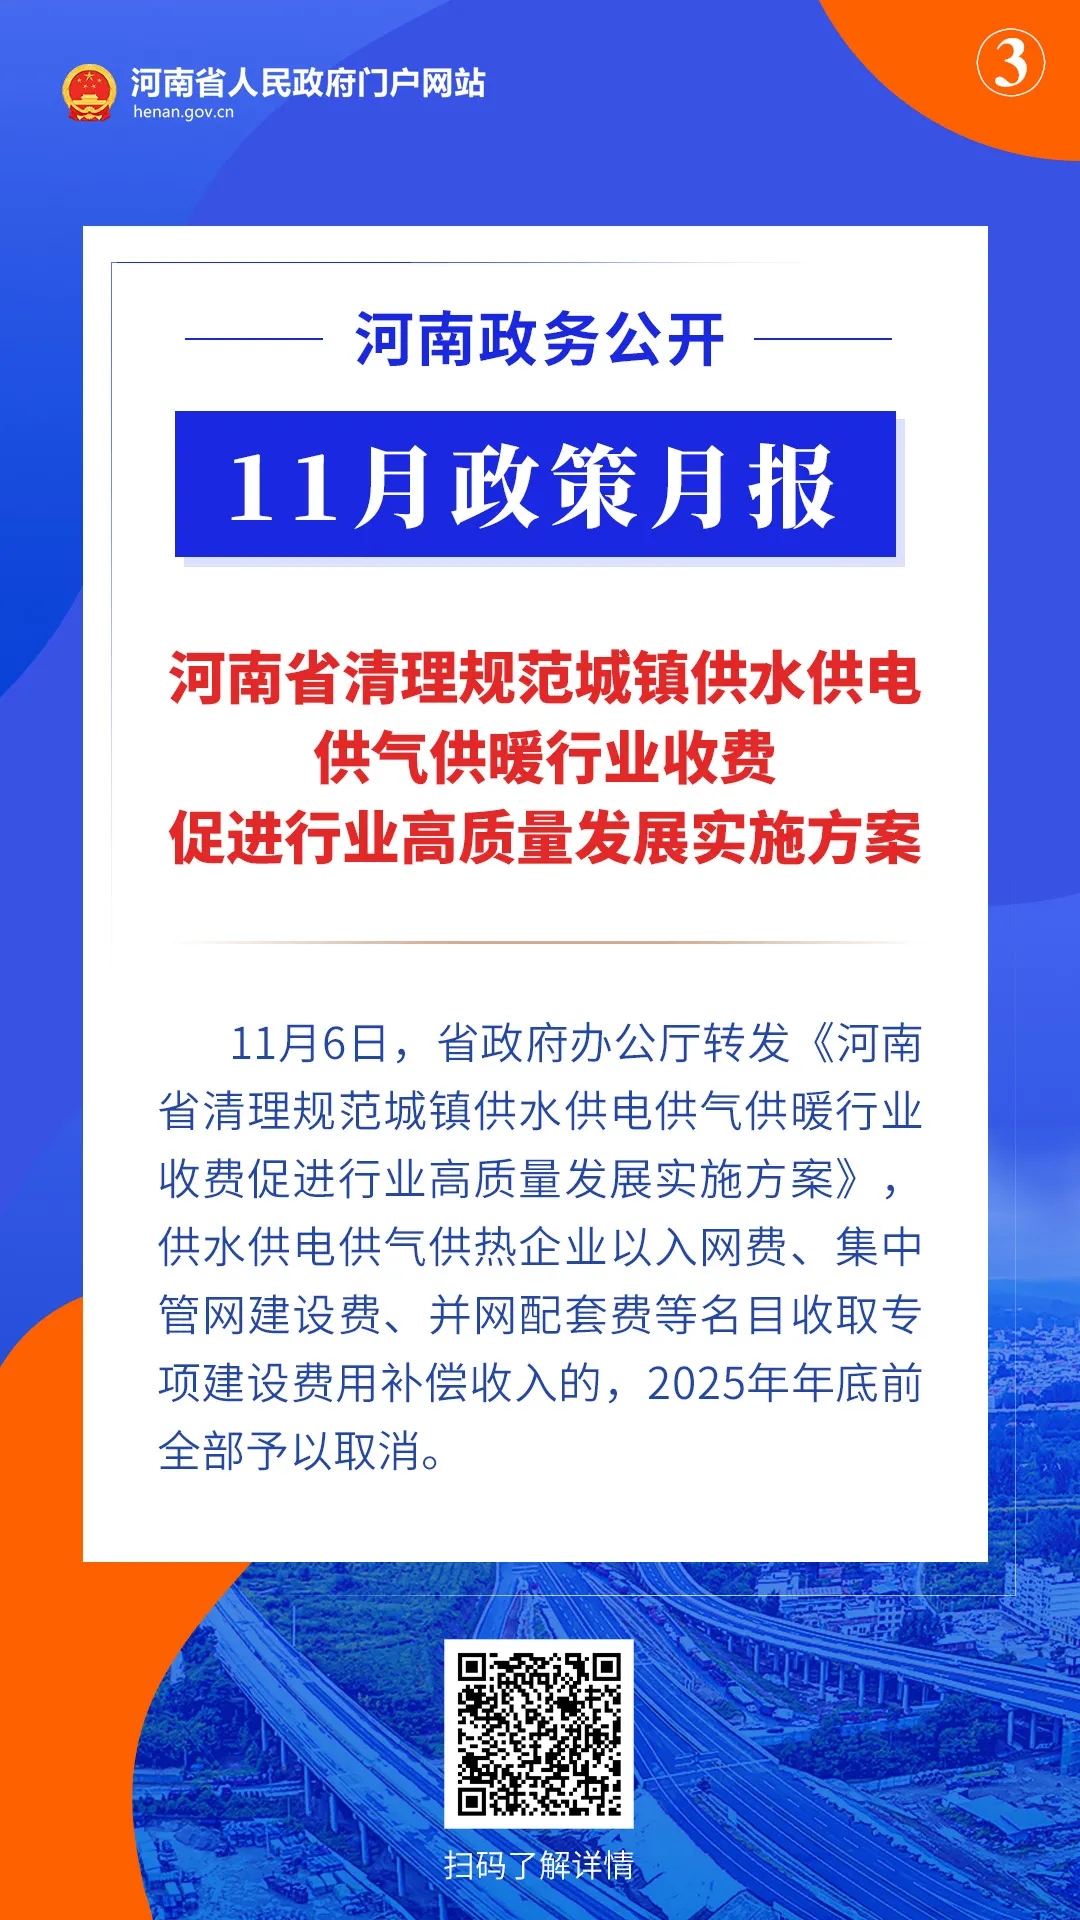 11月，河南省政府出臺了這些重要政策